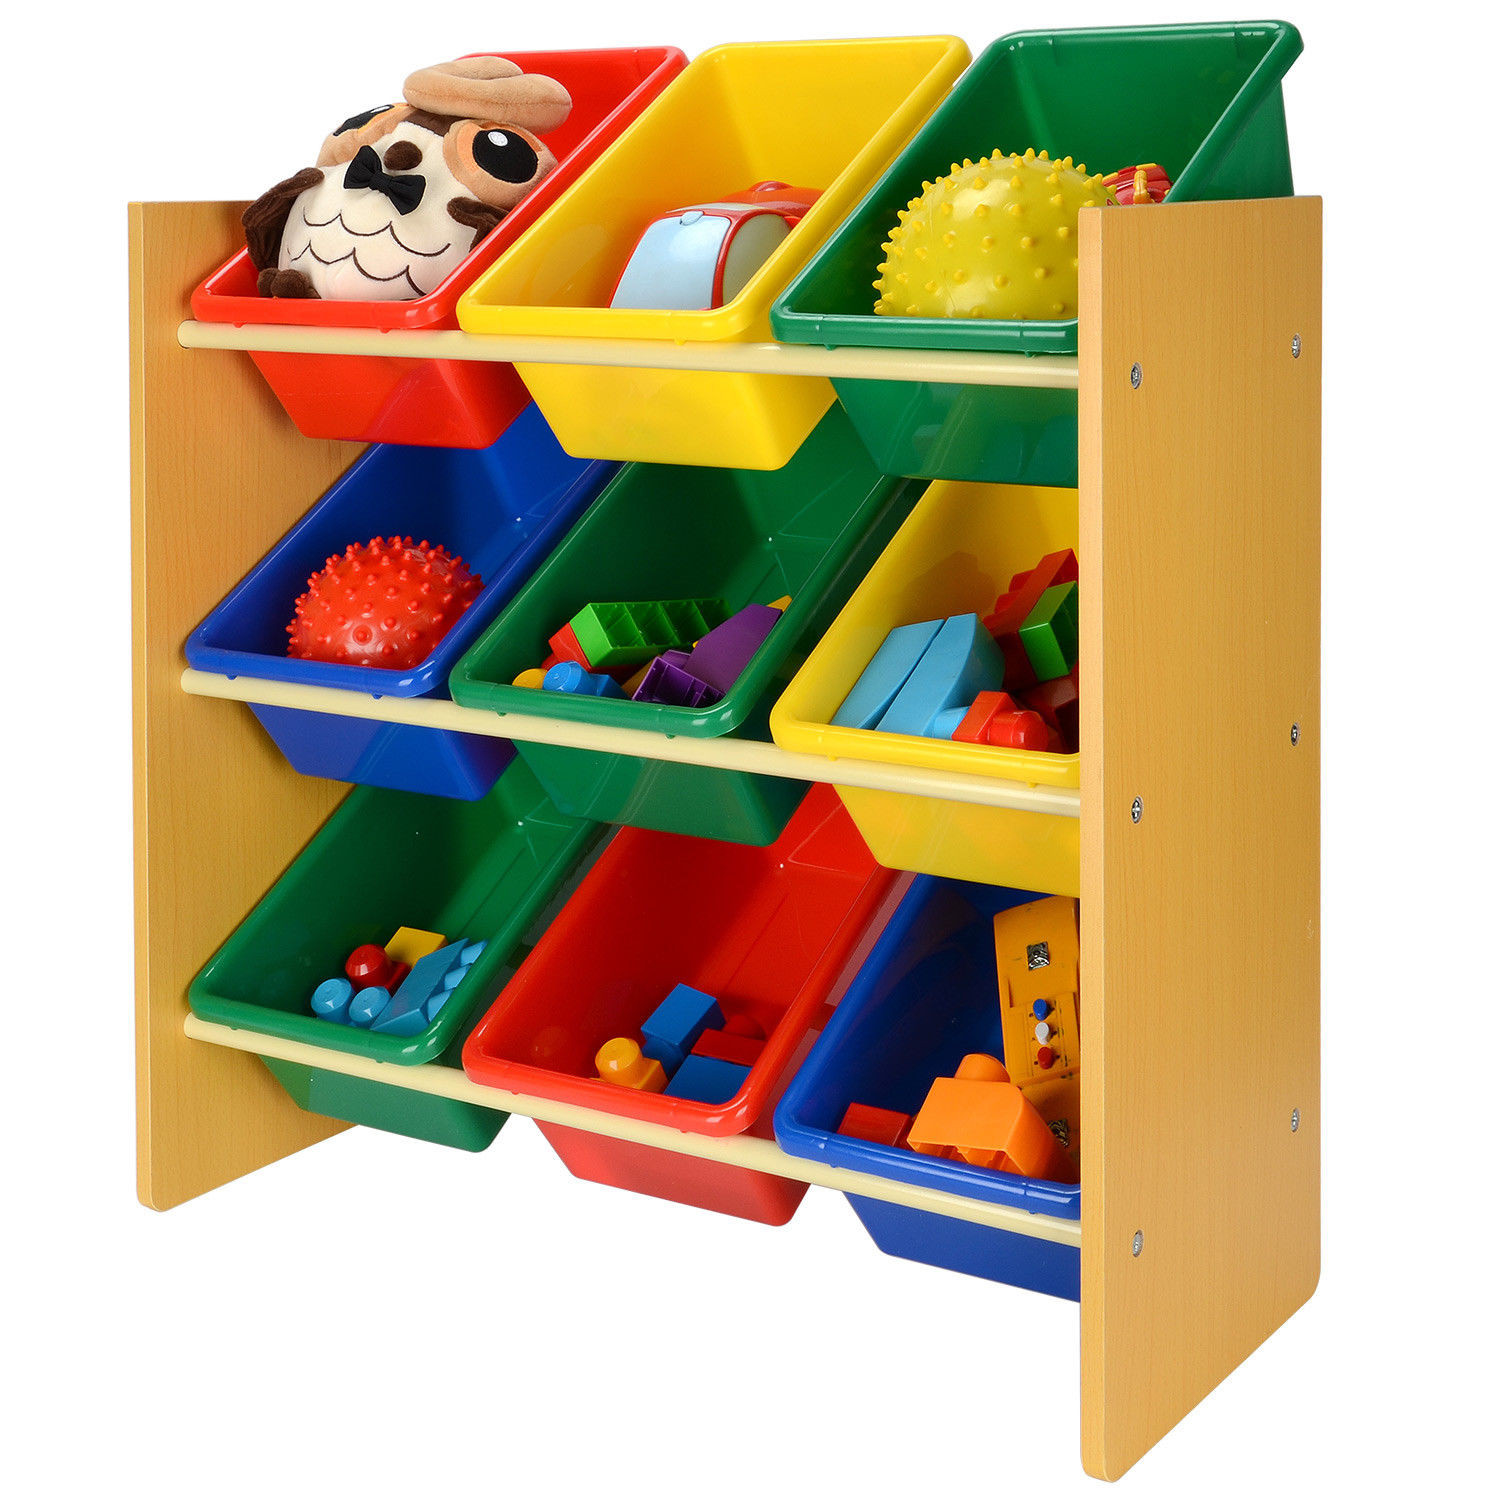 Kids Storage Bins
 LIVEDITOR Children Wooden Storage Unit 12 Bins Toy